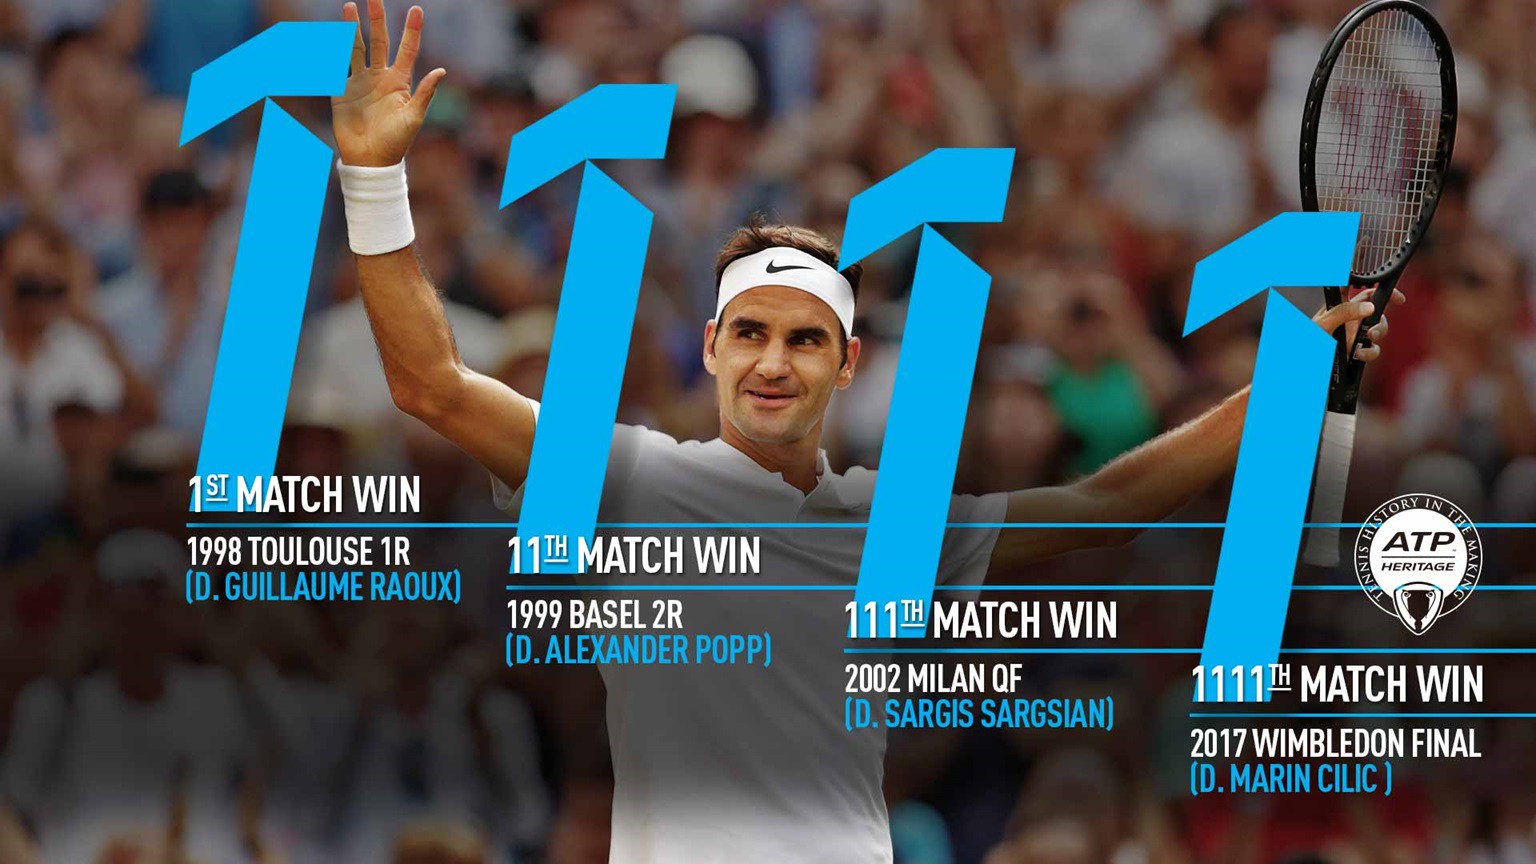 Khó có thể biết được bao giờ kỷ nguyên của Federer mới khép lại sau 1111 trận thắng